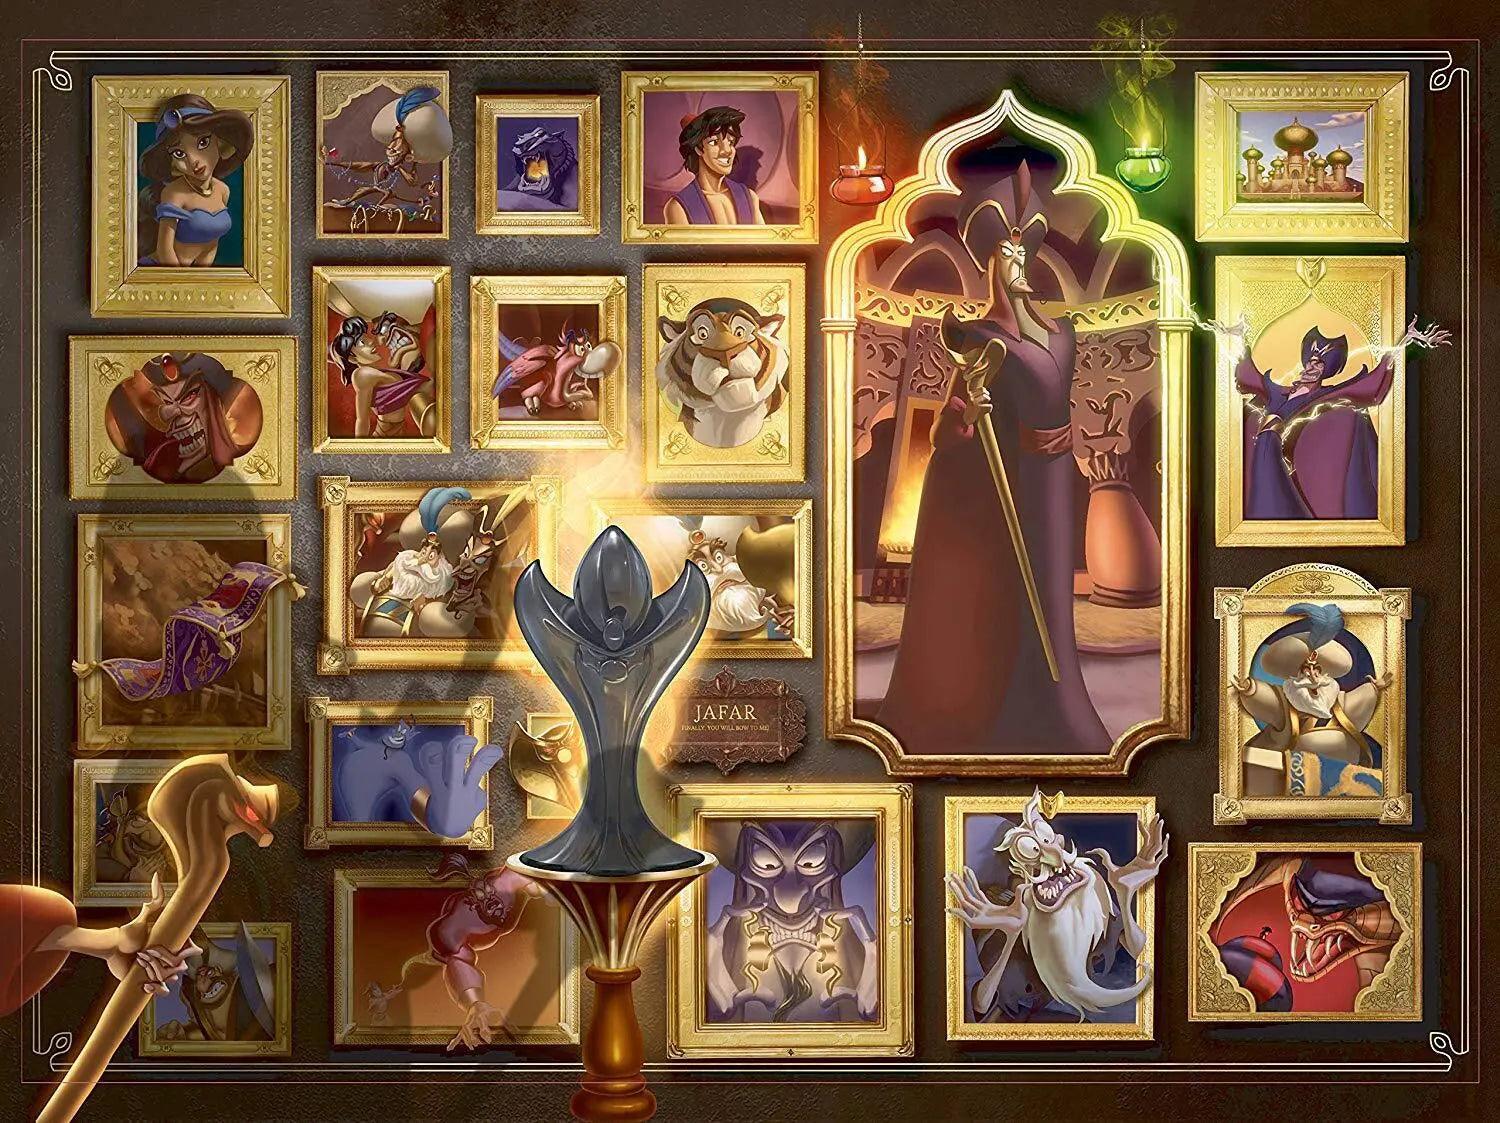 Ravensburger Disney Villainous Jafar 1000 Pieces Jigsaw Puzzle - Eclipse Games Puzzles Novelties